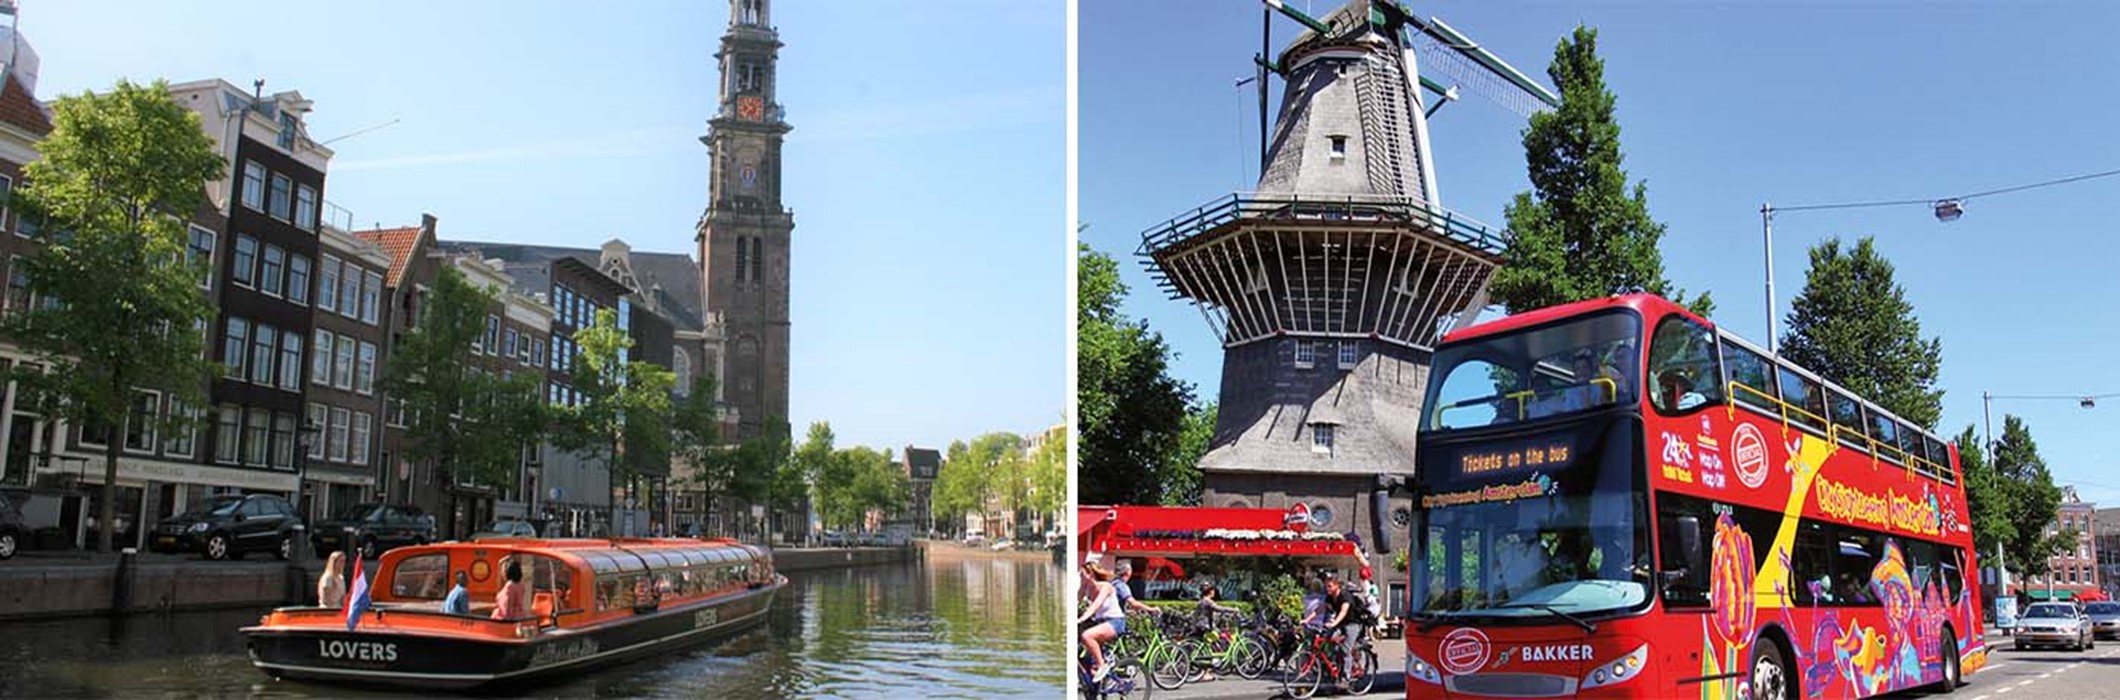 Autobús turístico Hop on Hop off y crucero por los canales de Ámsterdam